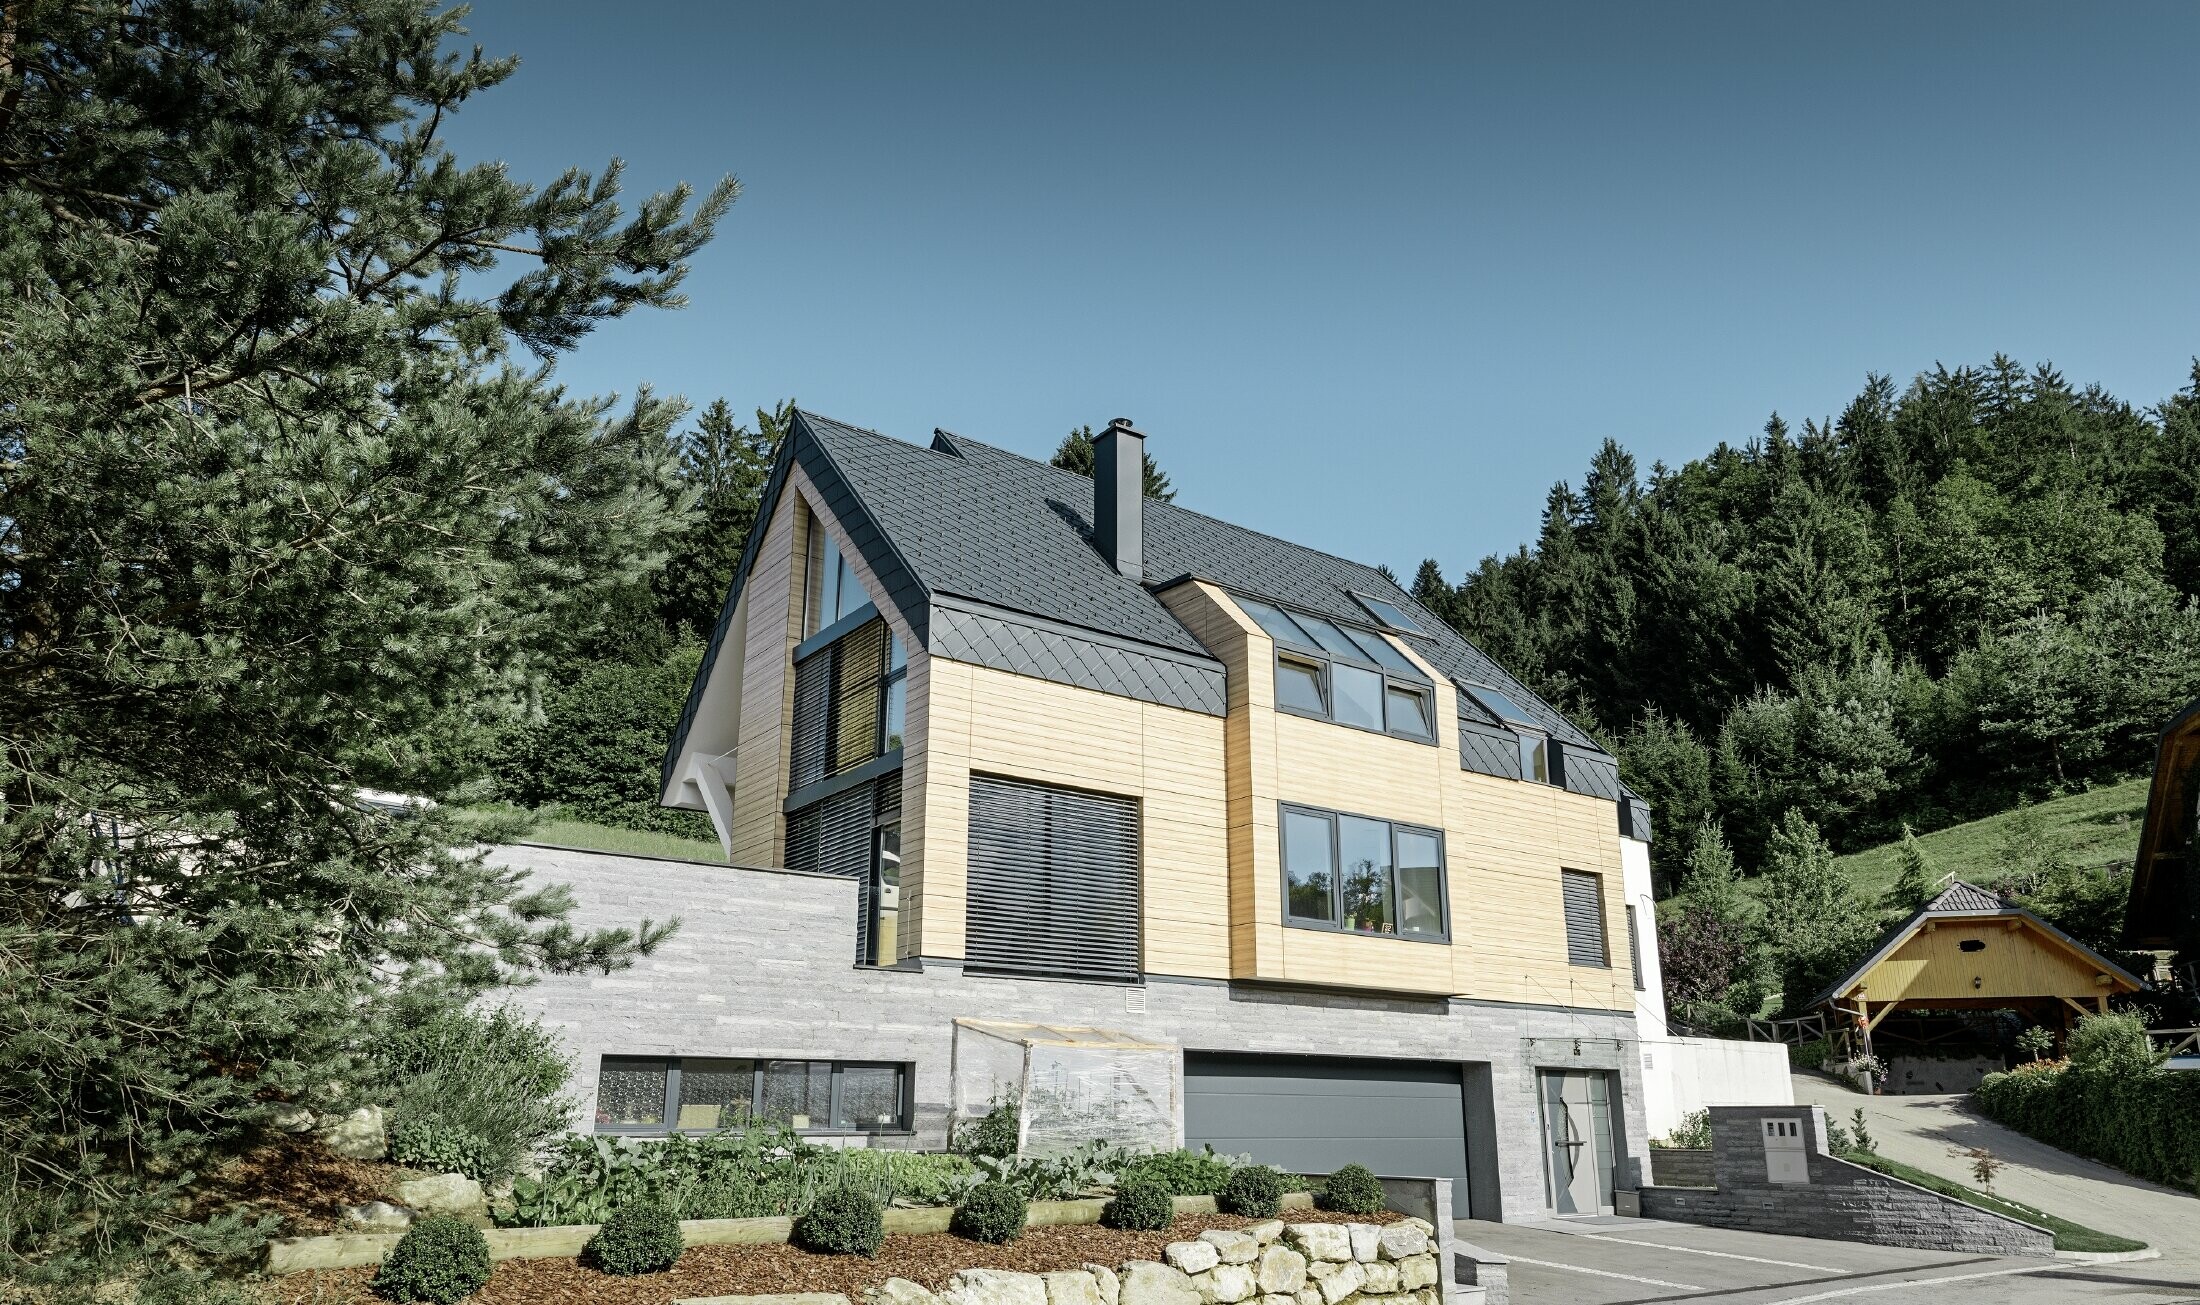 casa unifamiliare con tetto a due falde senza sporgenza del tetto con una facciata in finto legno e una copertura in alluminio in antracite